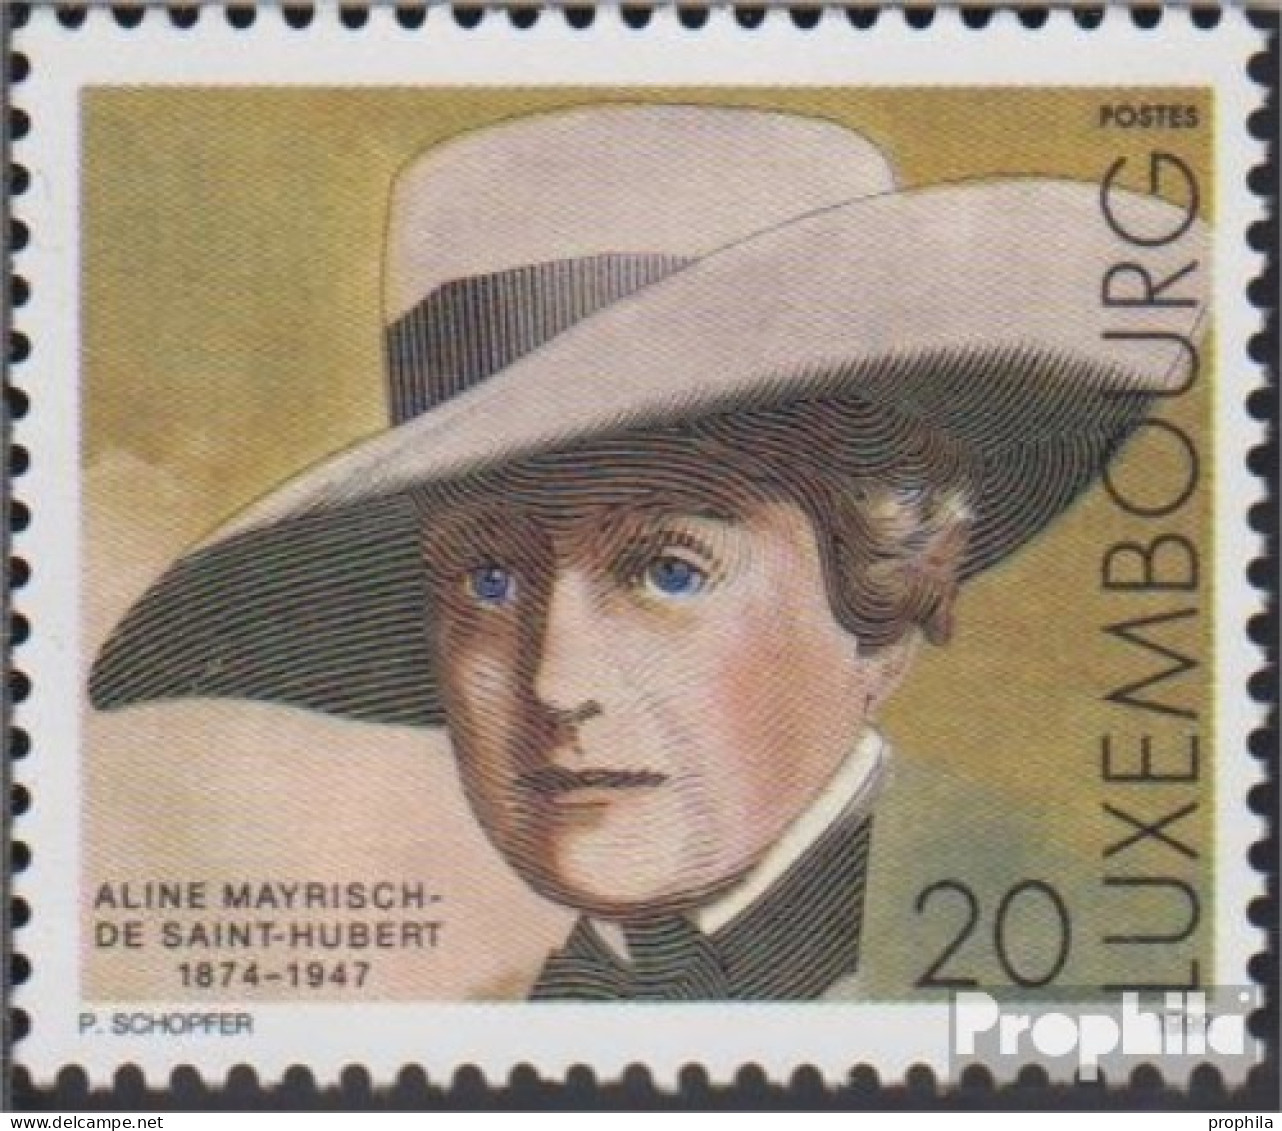 Luxemburg 1480 (kompl.Ausg.) Postfrisch 1999 Aline Mayrisch-de Saint-Hubert - Neufs